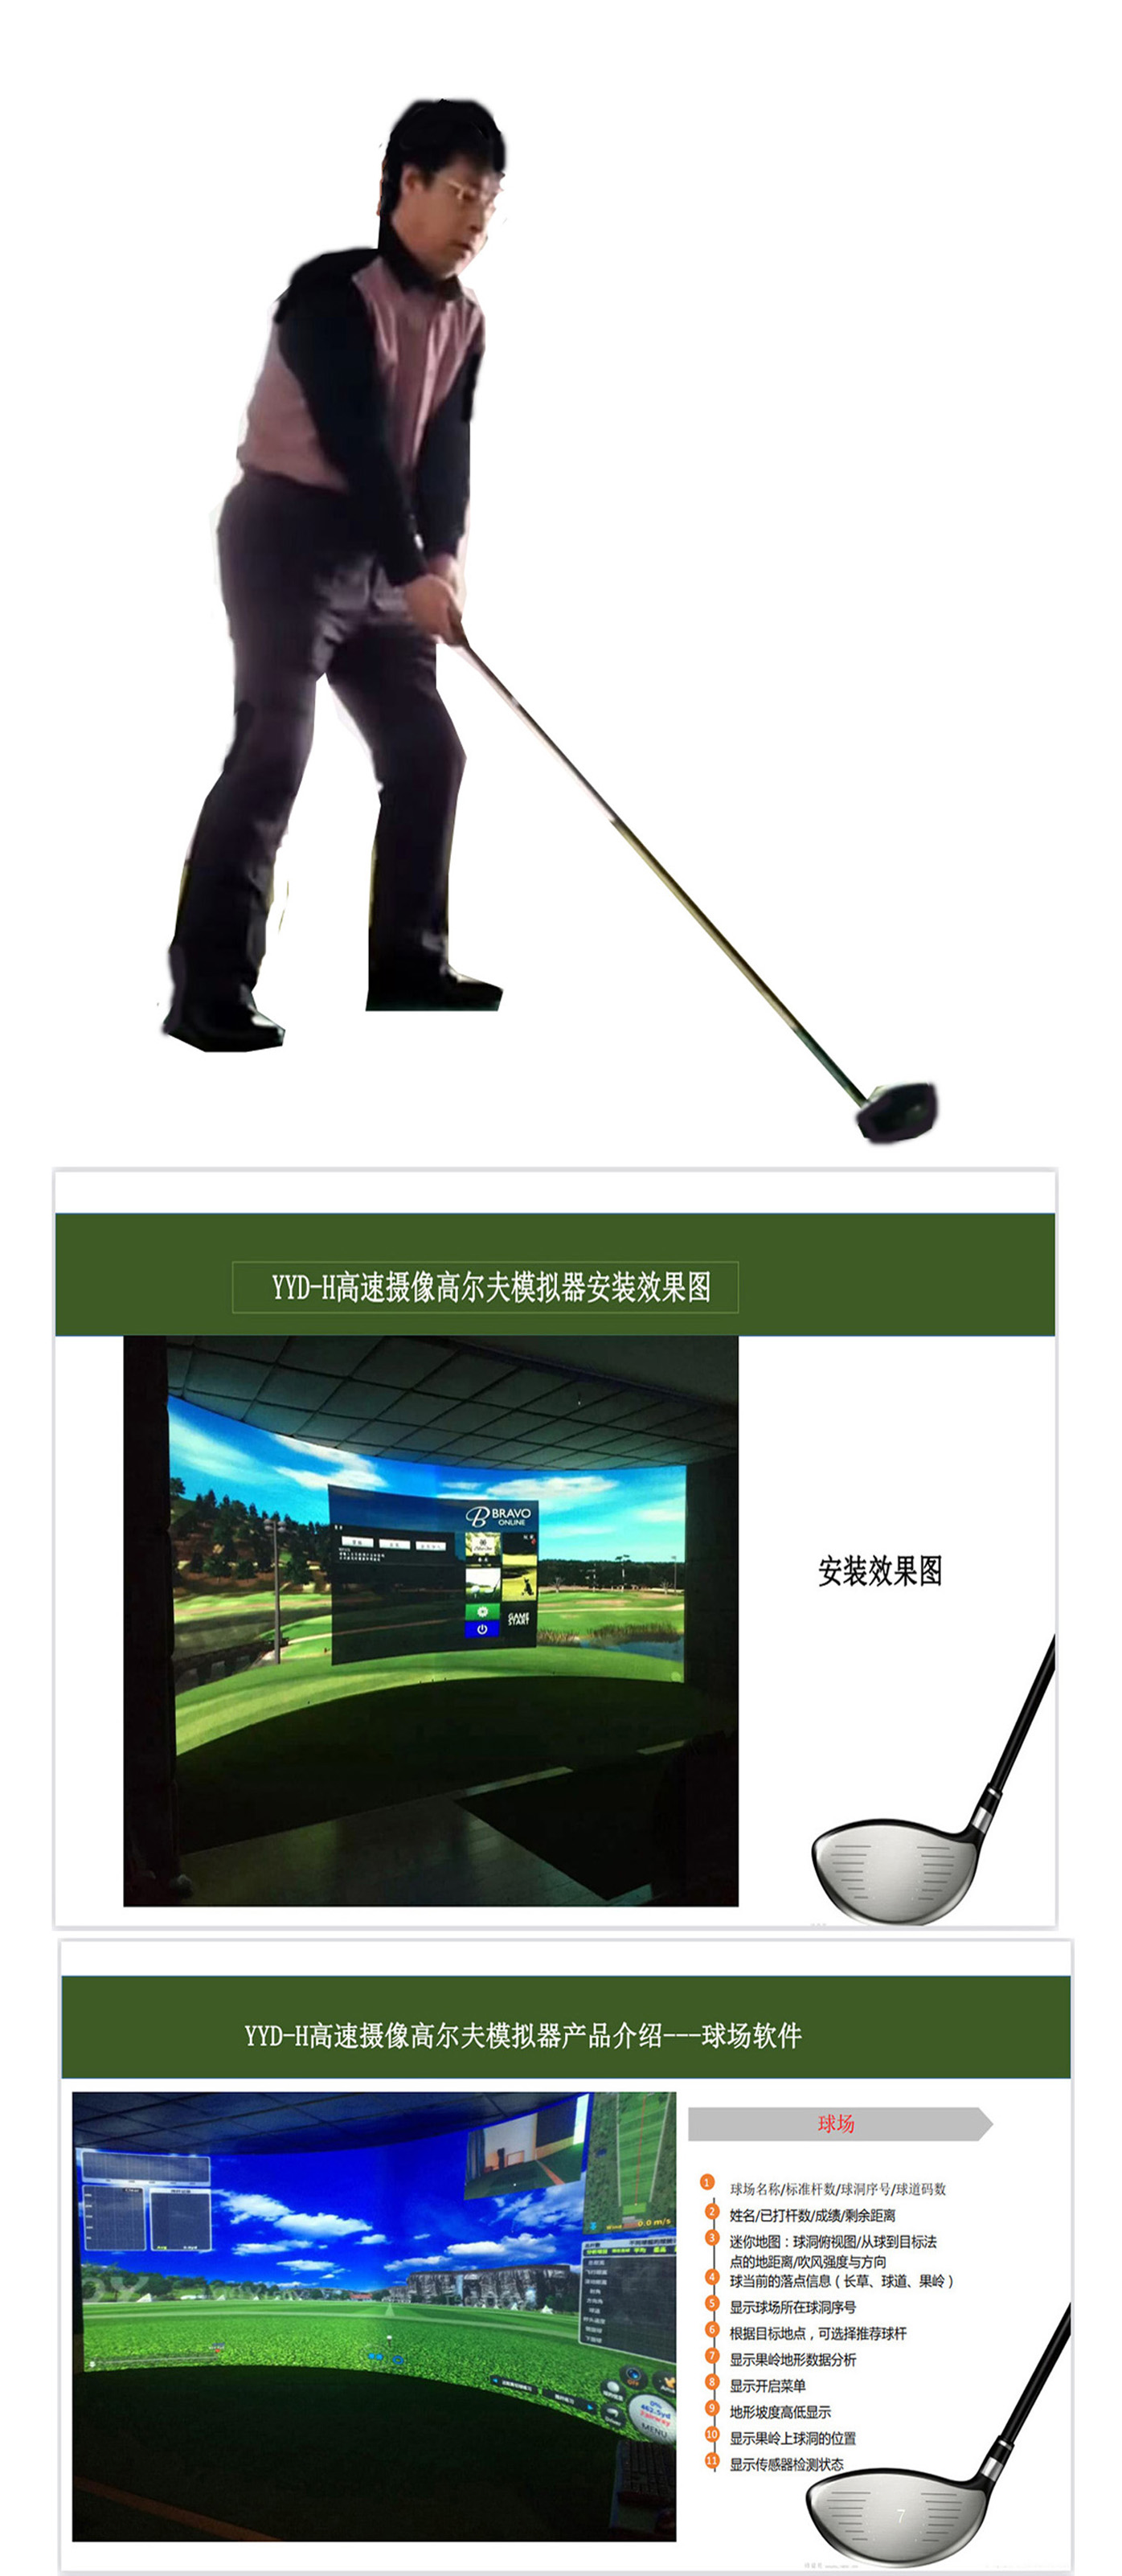 高尔夫模拟室内设备 01.jpg